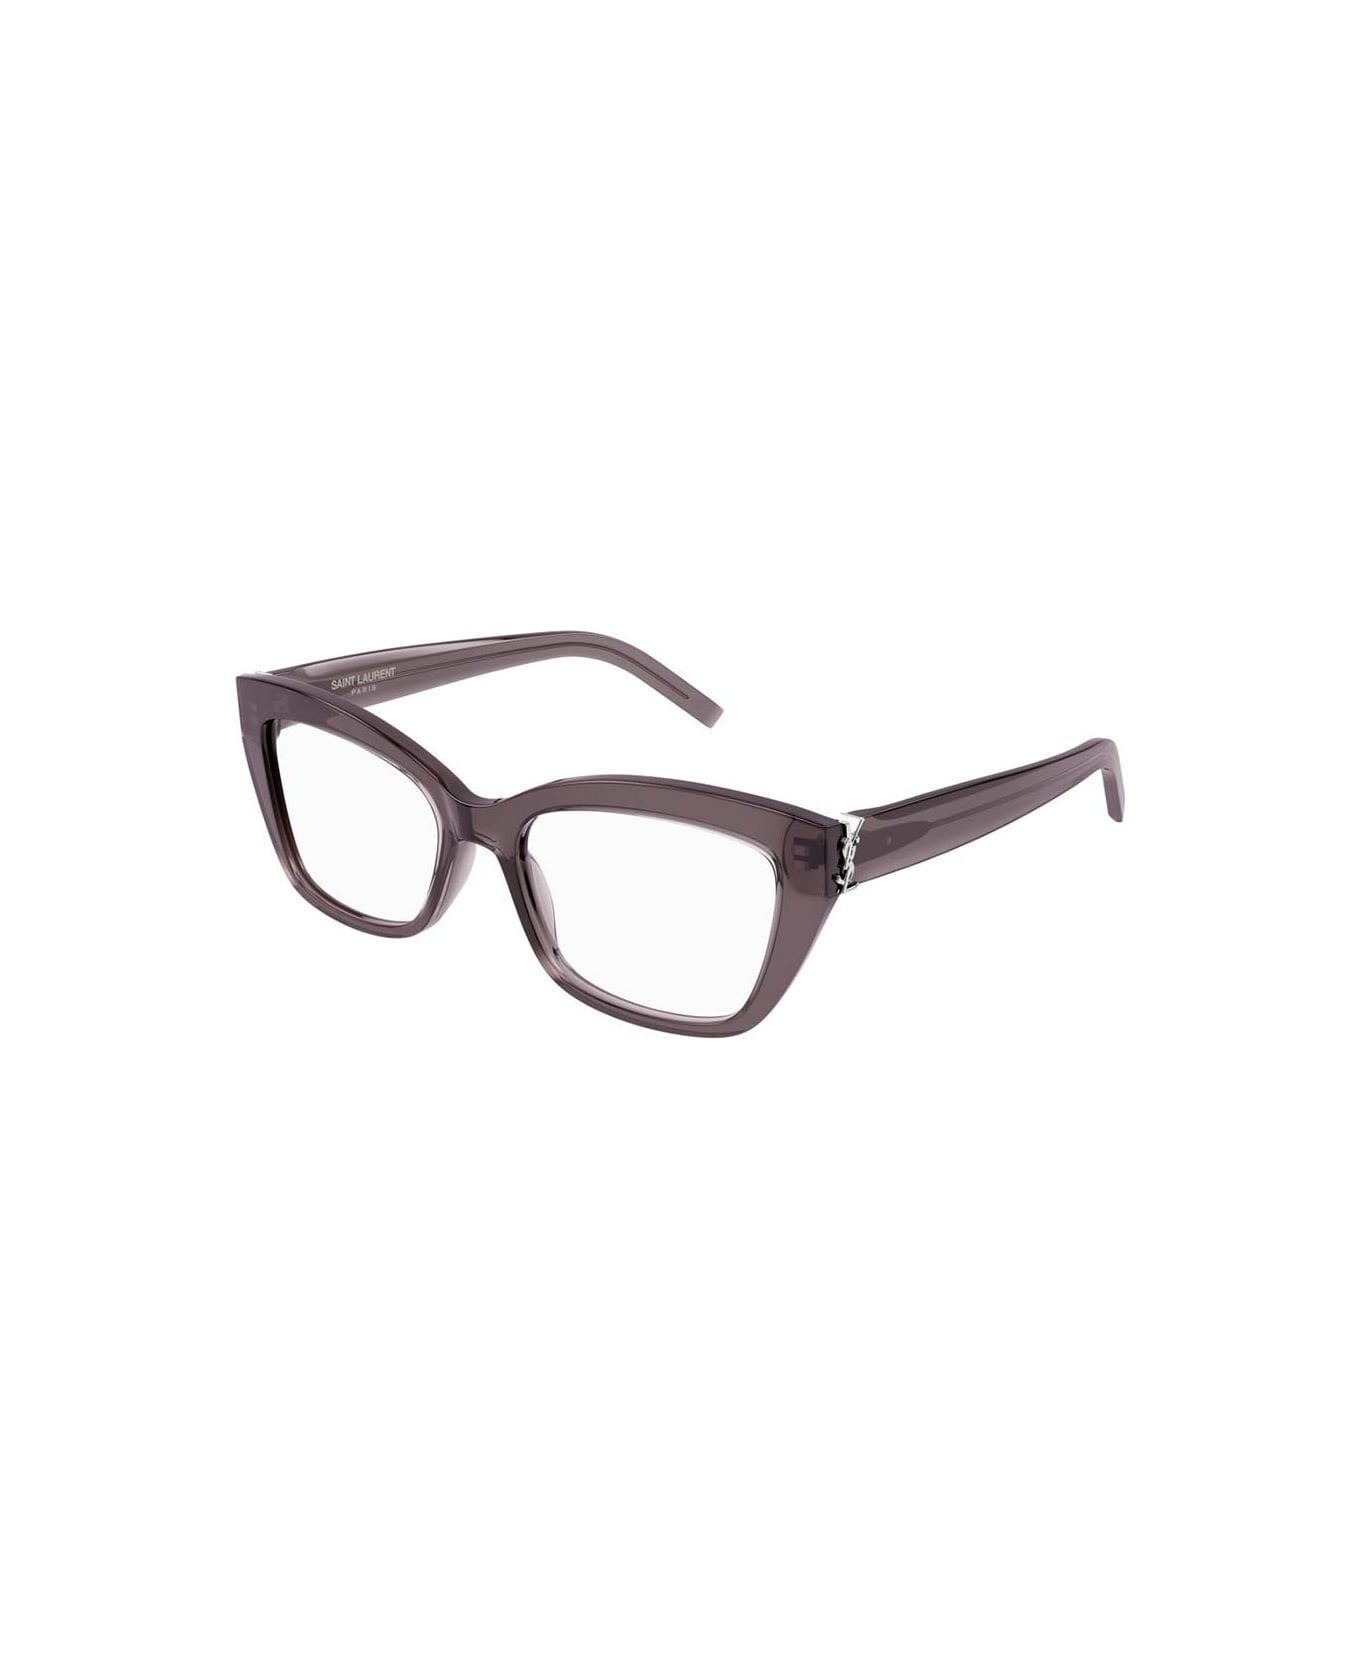 Saint Laurent Eyewear Glasses - Grigio アイウェア